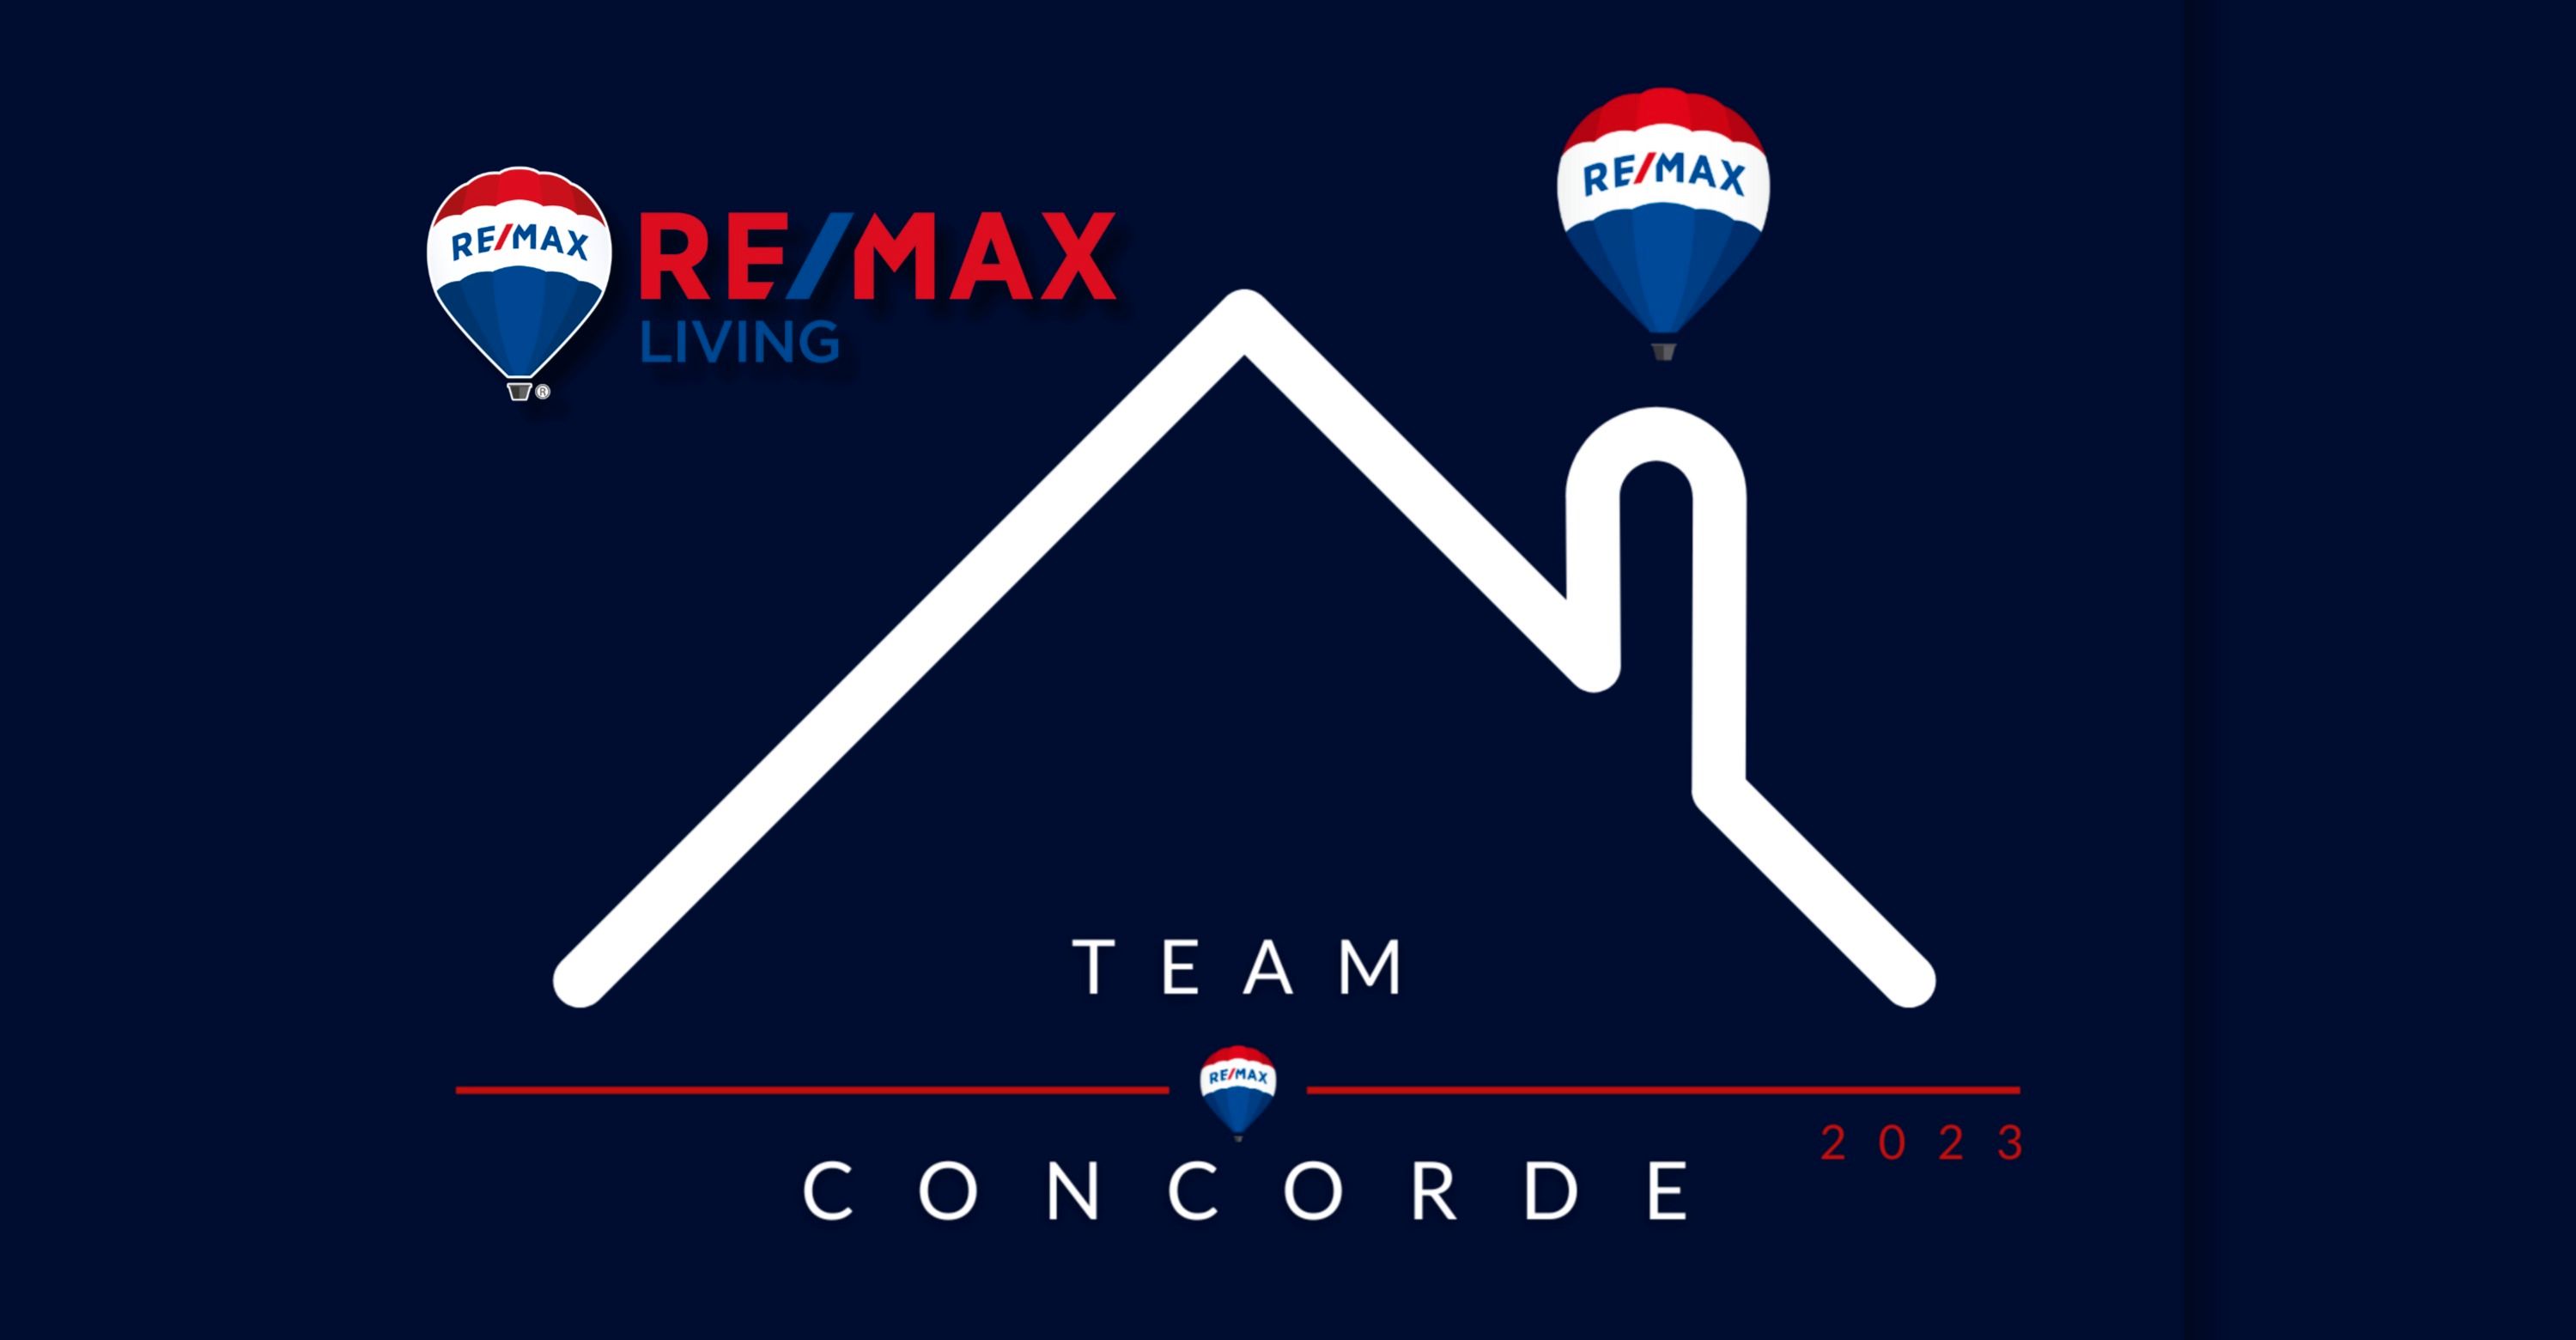 Remax Team Concorde